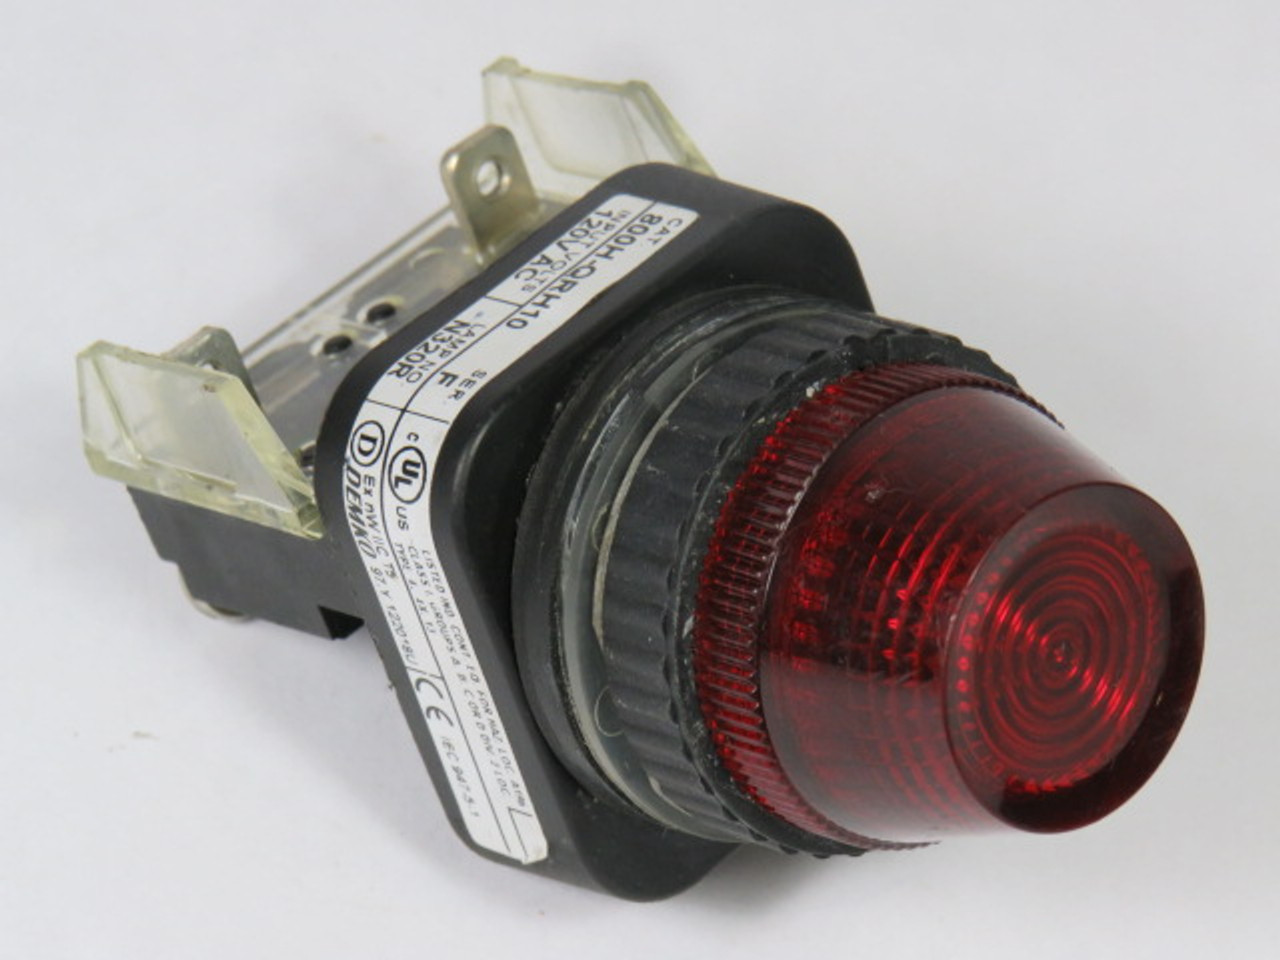 Allen-Bradley 800H-QRH10R Ser F Universal Pilot Light 120V Red Lens USED